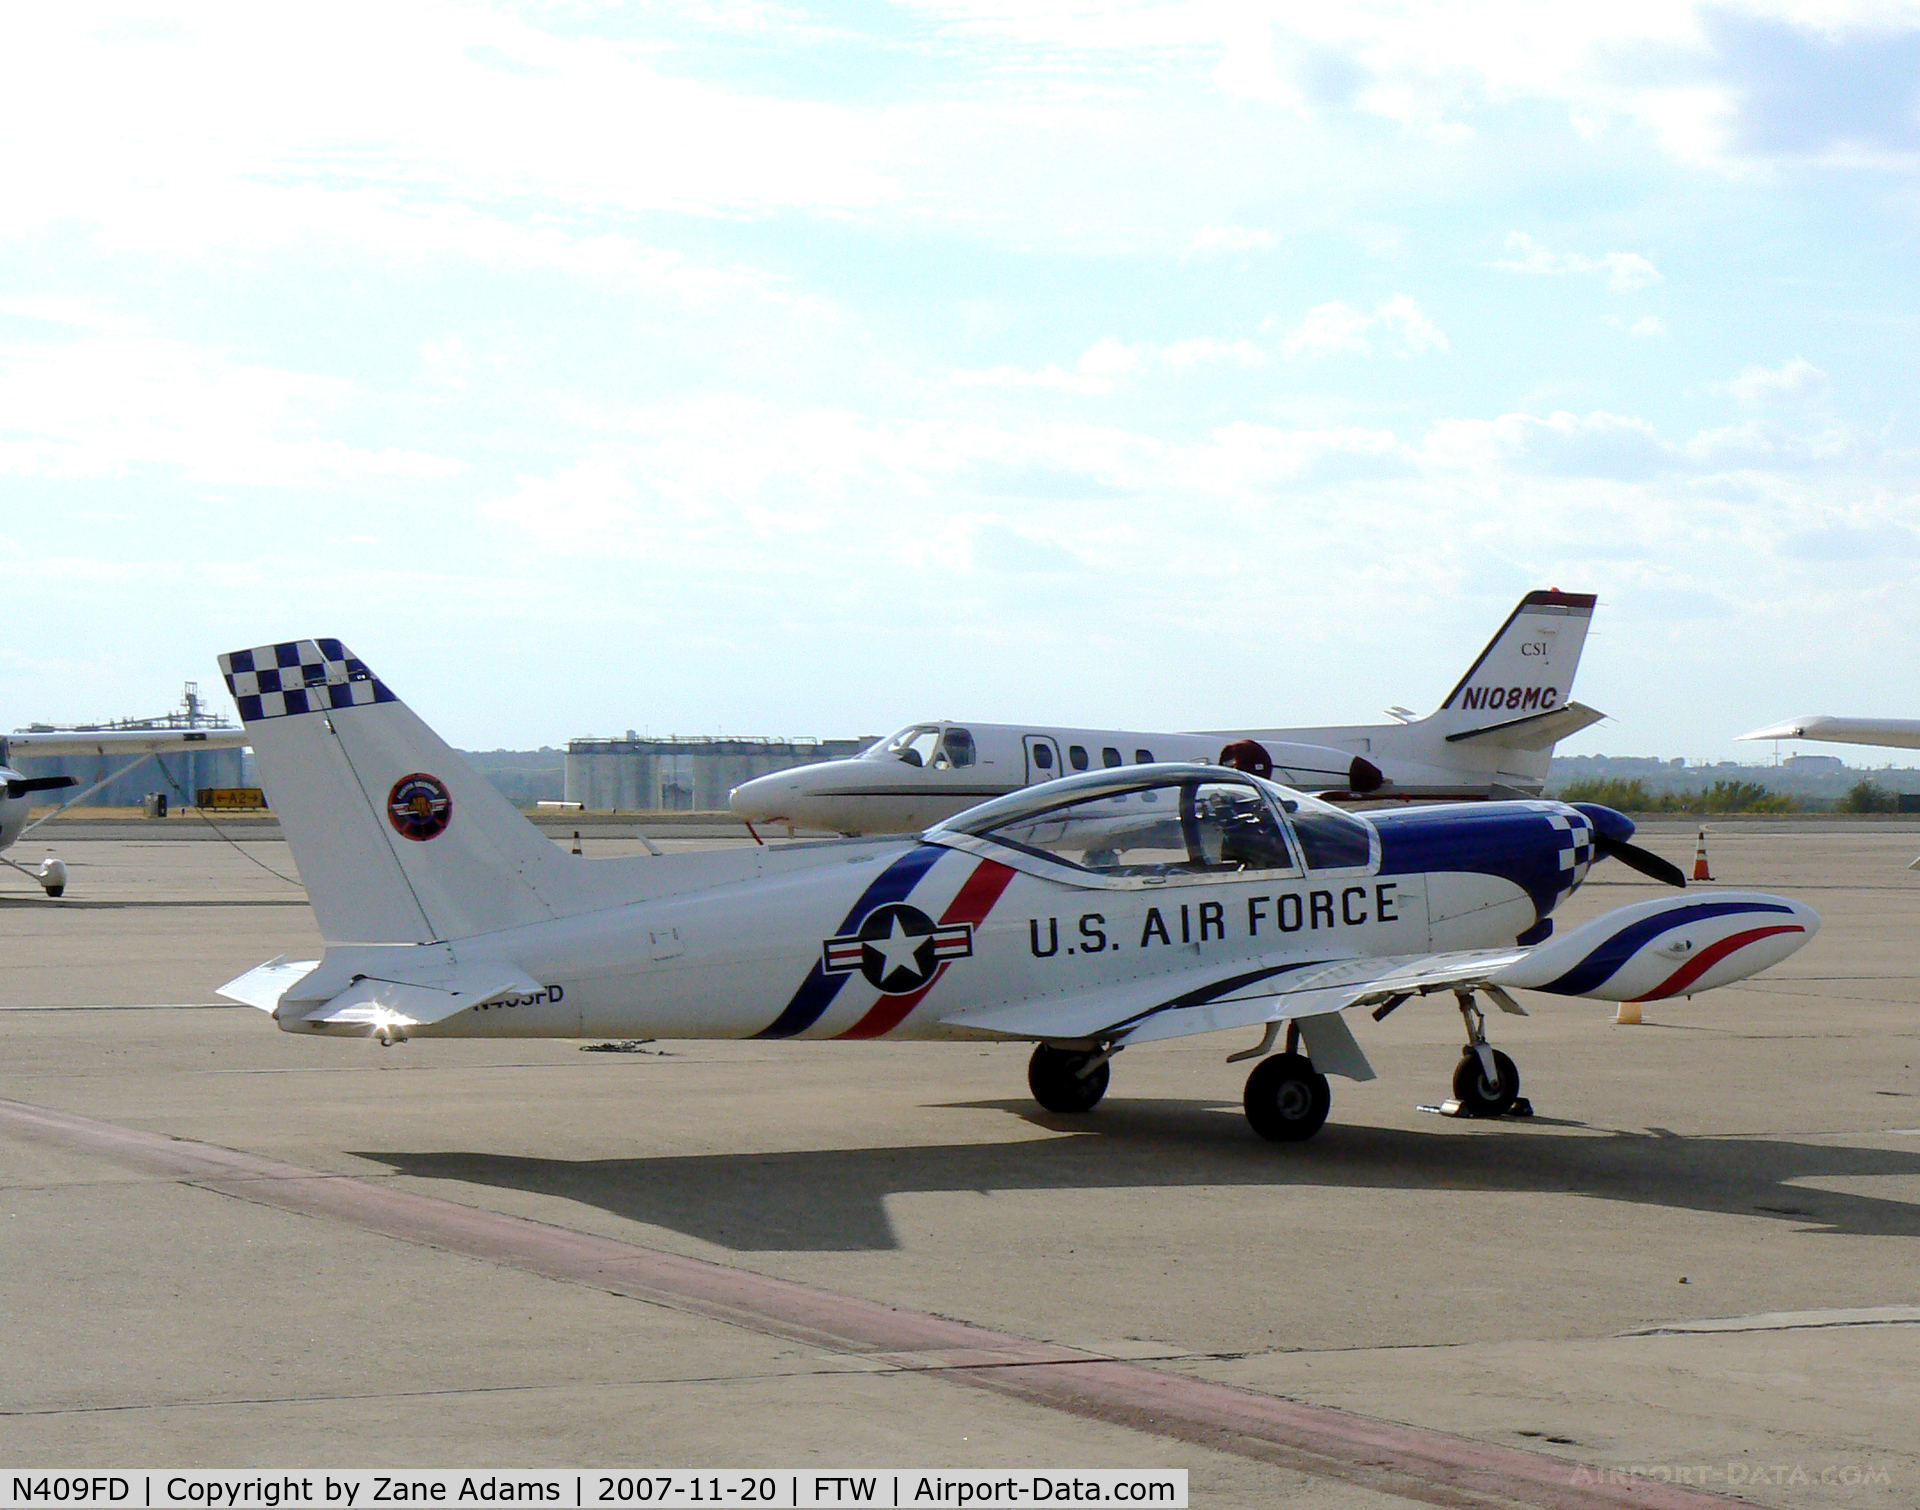 N409FD, 1987 SIAI-Marchetti F-260C C/N 726, Air Combat USA at Meacham Field